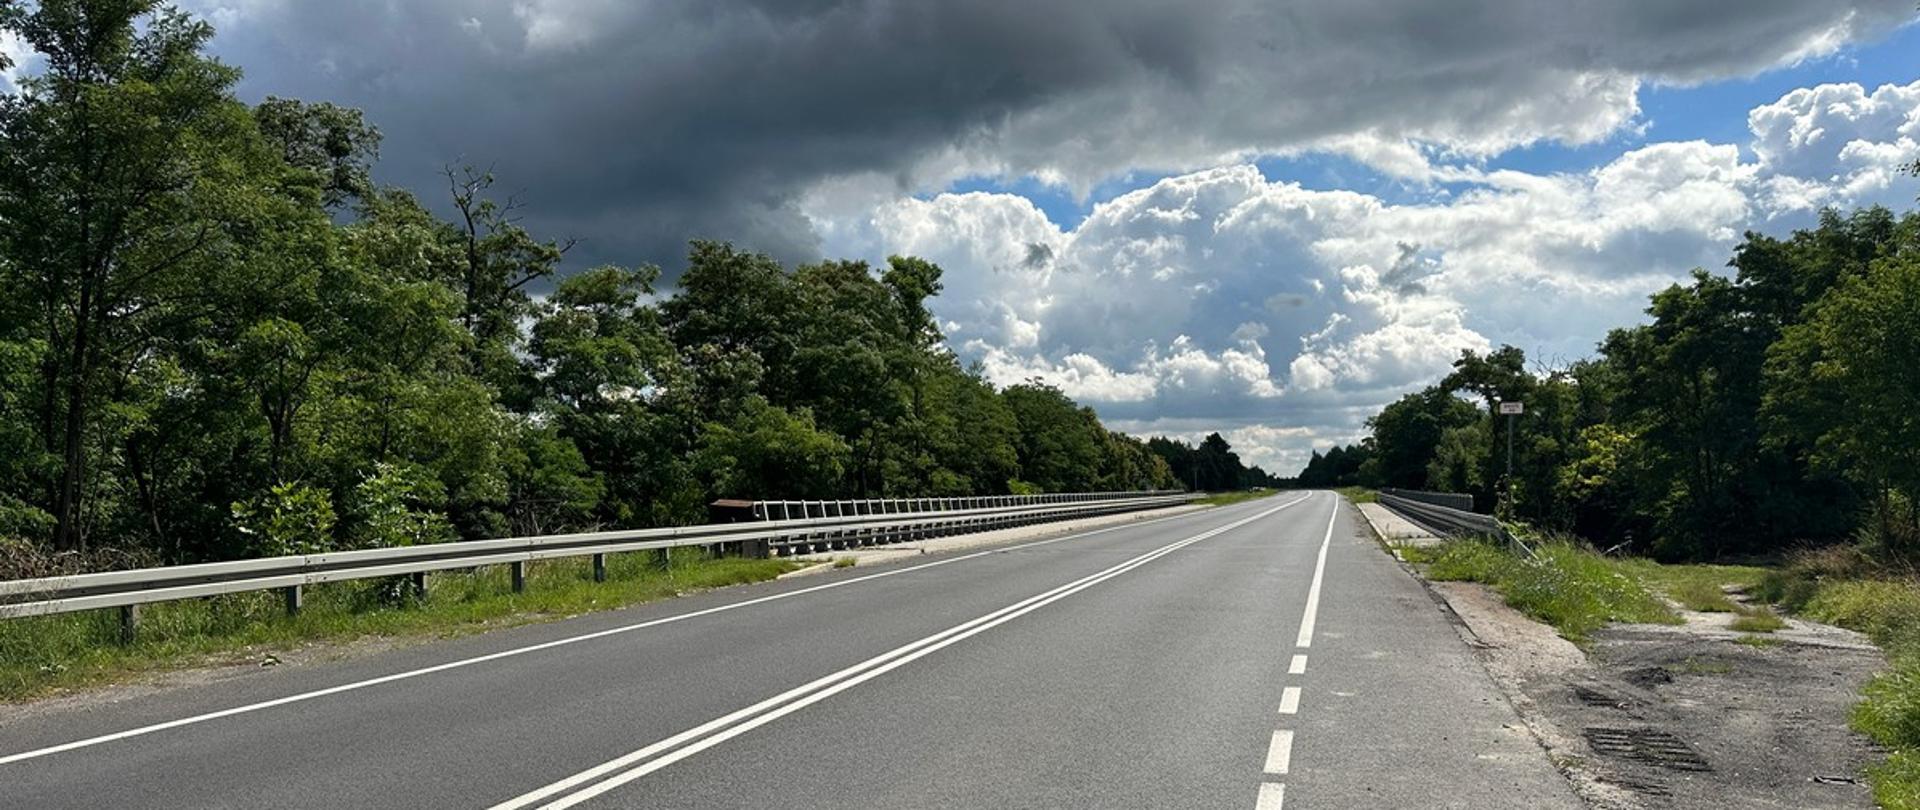 Droga krajowa nr 94 w okolicach miejscowości Pyskowice. Droga biegnie przez zalesiony teren. W środkowej części zdjęcia znajduje się most z barierami ochronnymi po każdej stornie drogi. Niebo pokrywają gęste, ale białe chmury.